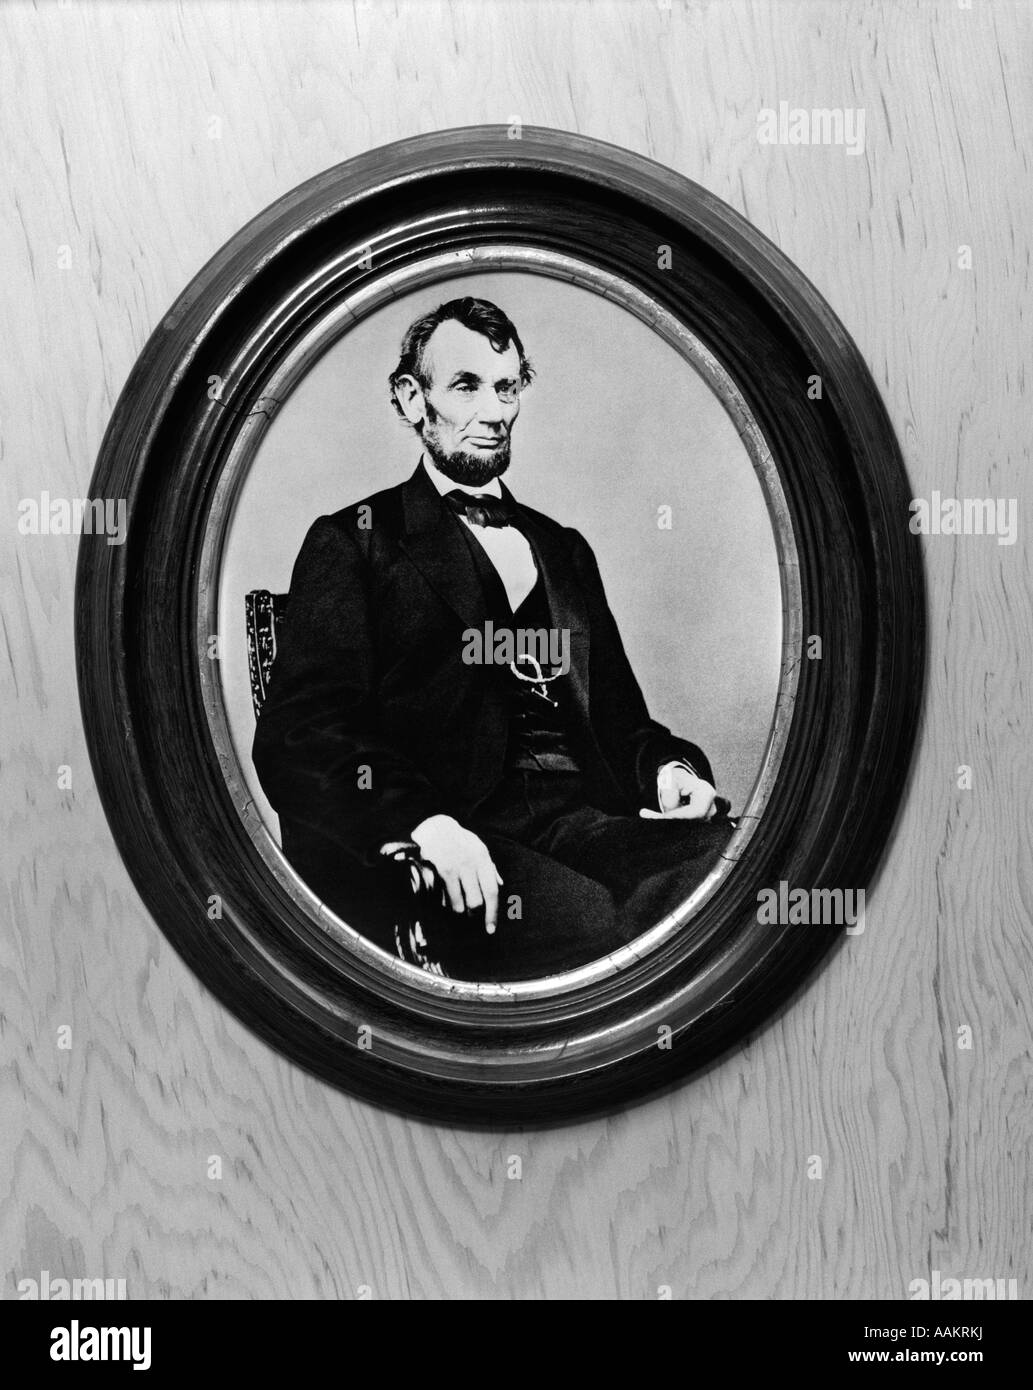 PORTRAIT DU PRÉSIDENT ABRAHAM LINCOLN ASSIS PRISE PAR MATTHEW BRADY EN 1864 EN OVALE NOIR CADRE PHOTO EN BOIS Banque D'Images